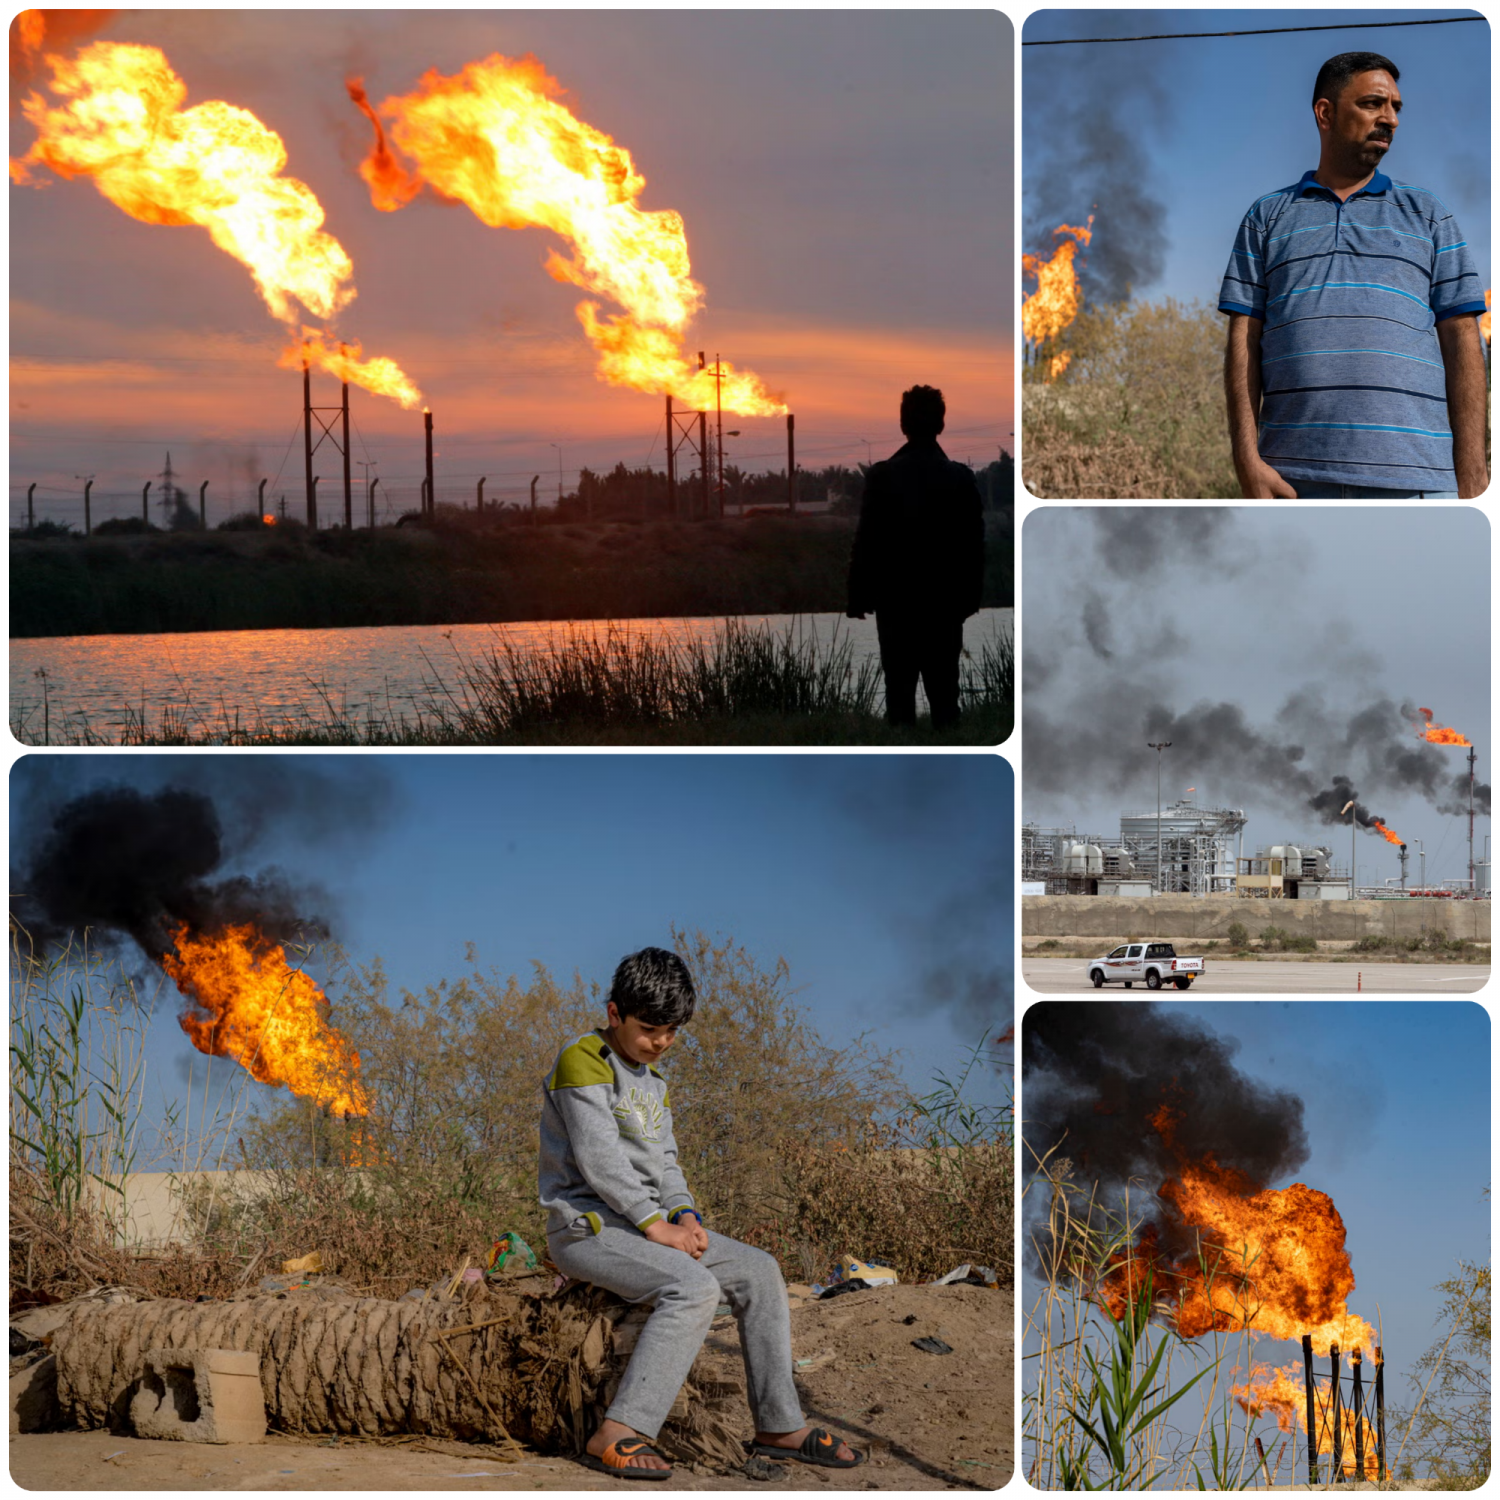 Tiềm năng khí đốt chưa được khai thác của Iraq: Bước ngoặt trong năng lượng toàn cầu?